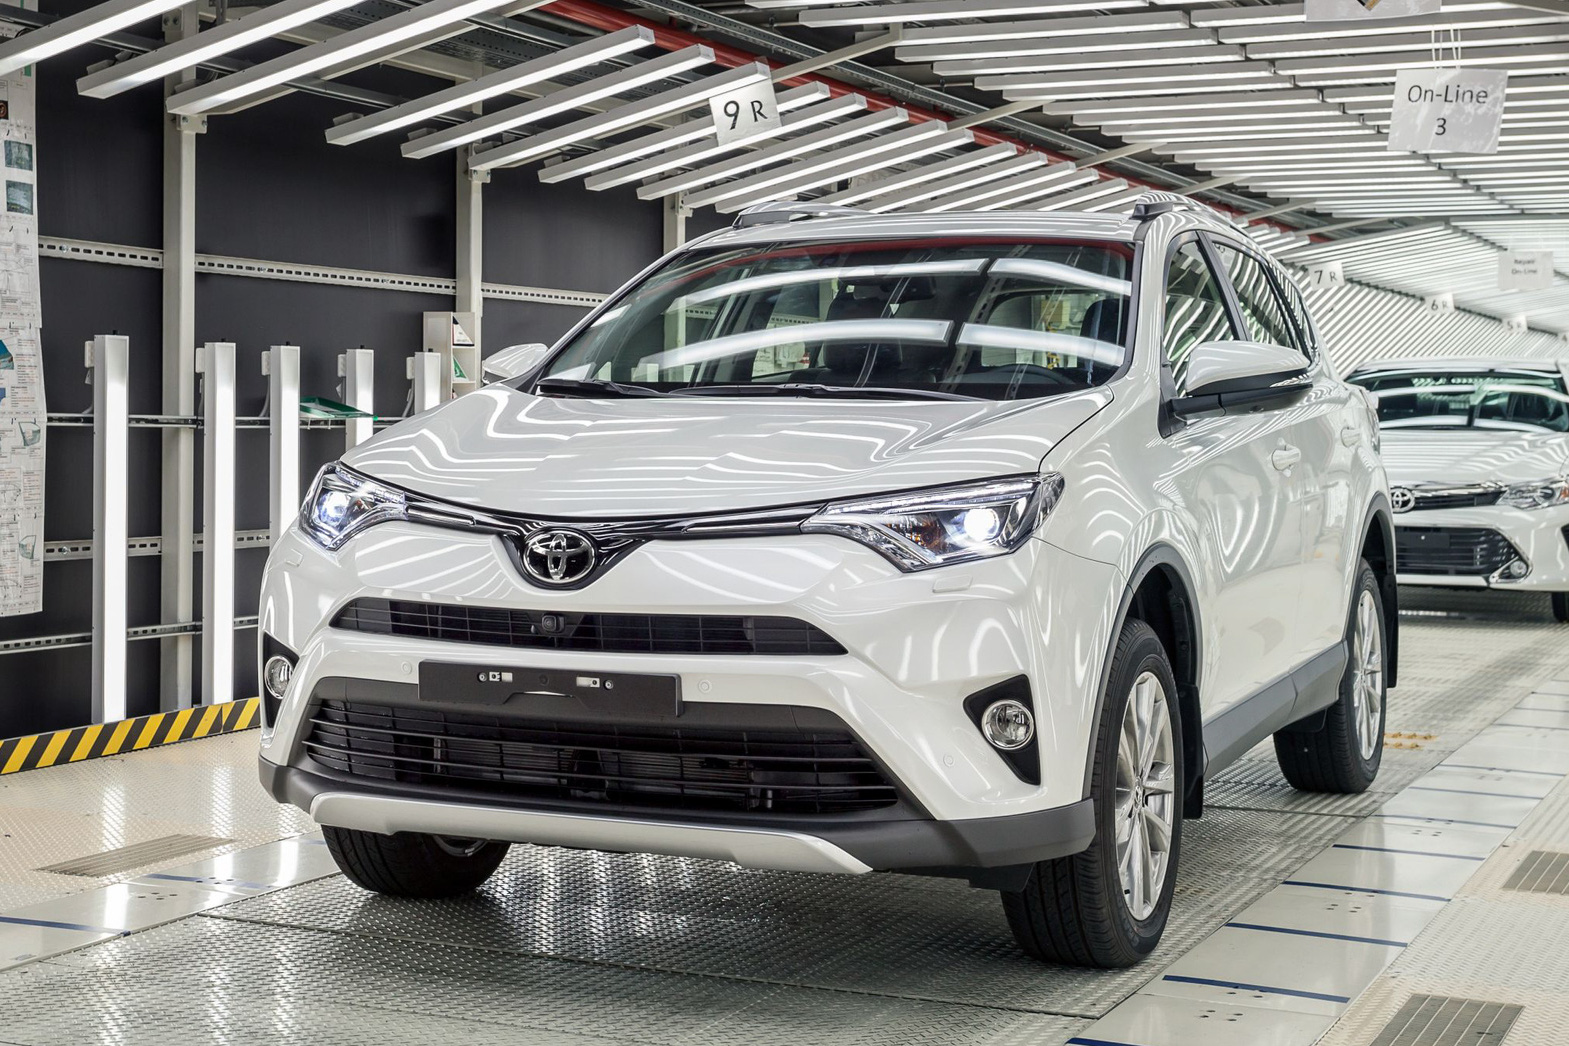 Toyota hạ sản lượng toàn cầu vì thiếu hụt một thứ từ Việt Nam